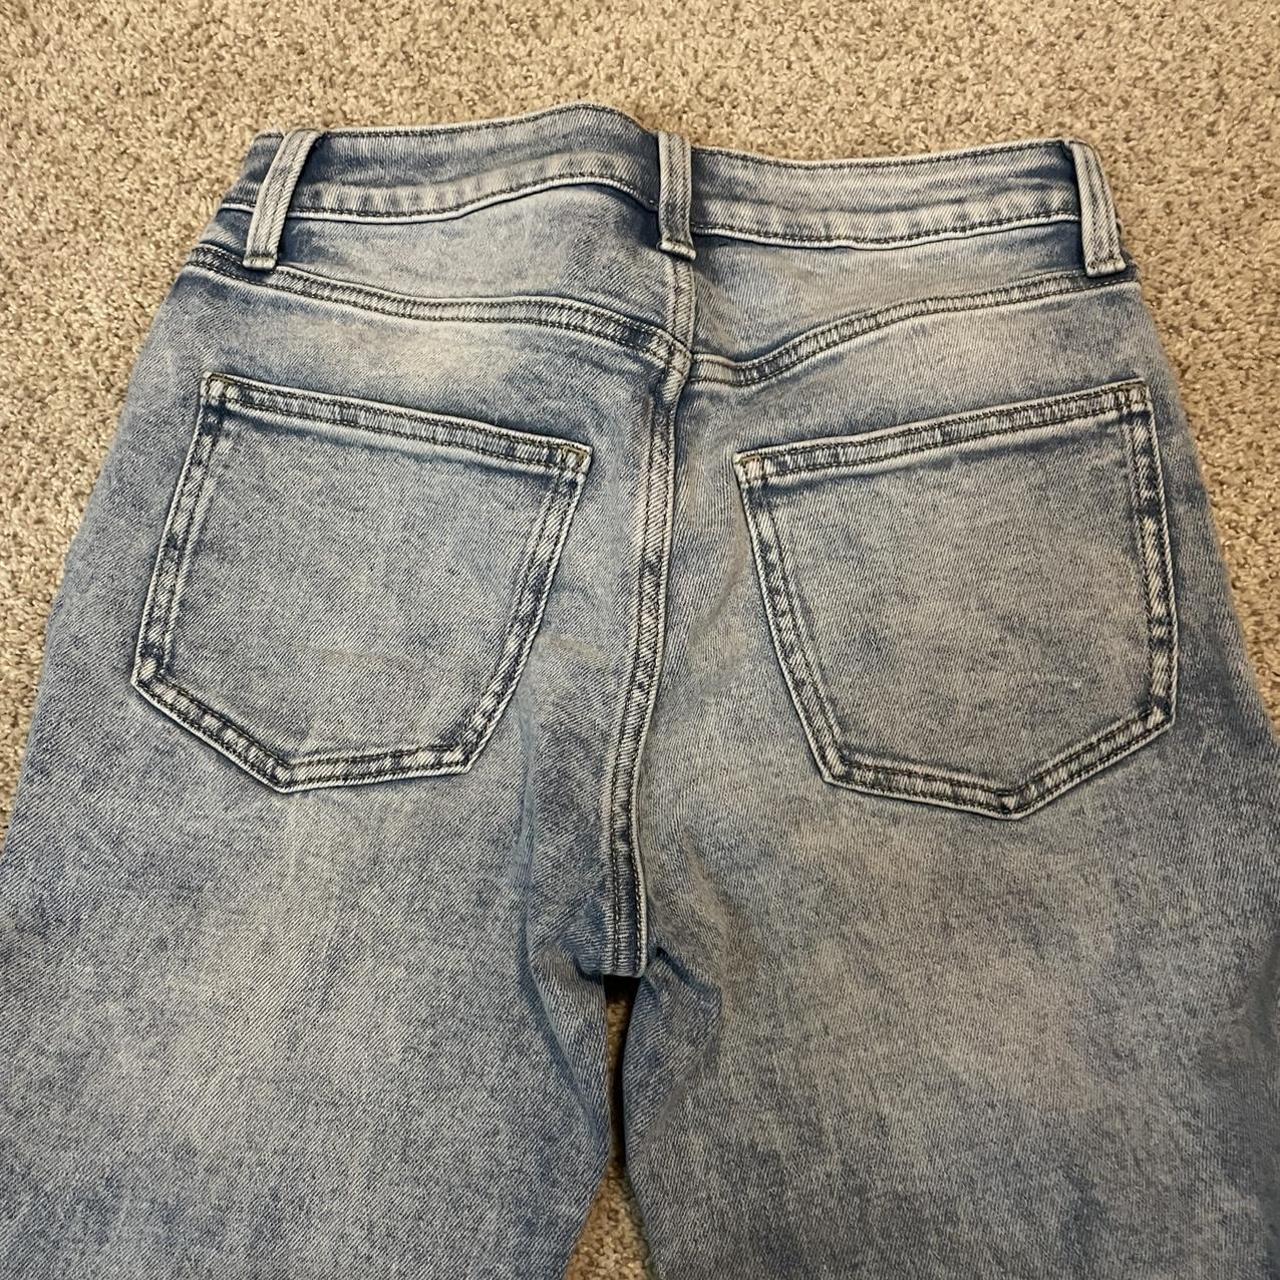 lauren conrad jeans size 4 #denim #jeans #stonewash - Depop